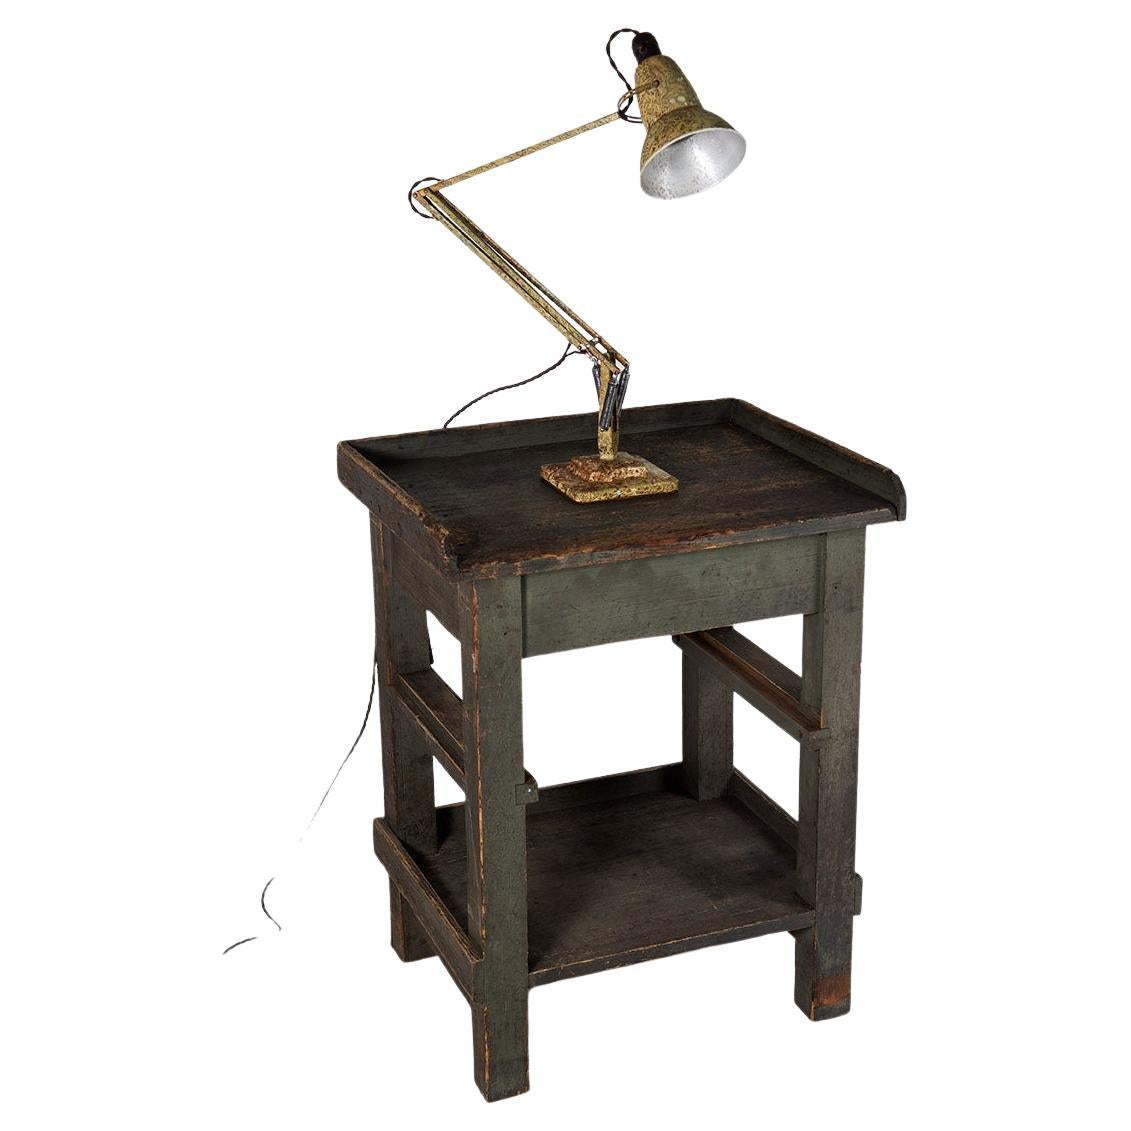 Lampe de bureau d'origine Herbert Terry Anglepoise 1227, lampe industrielle